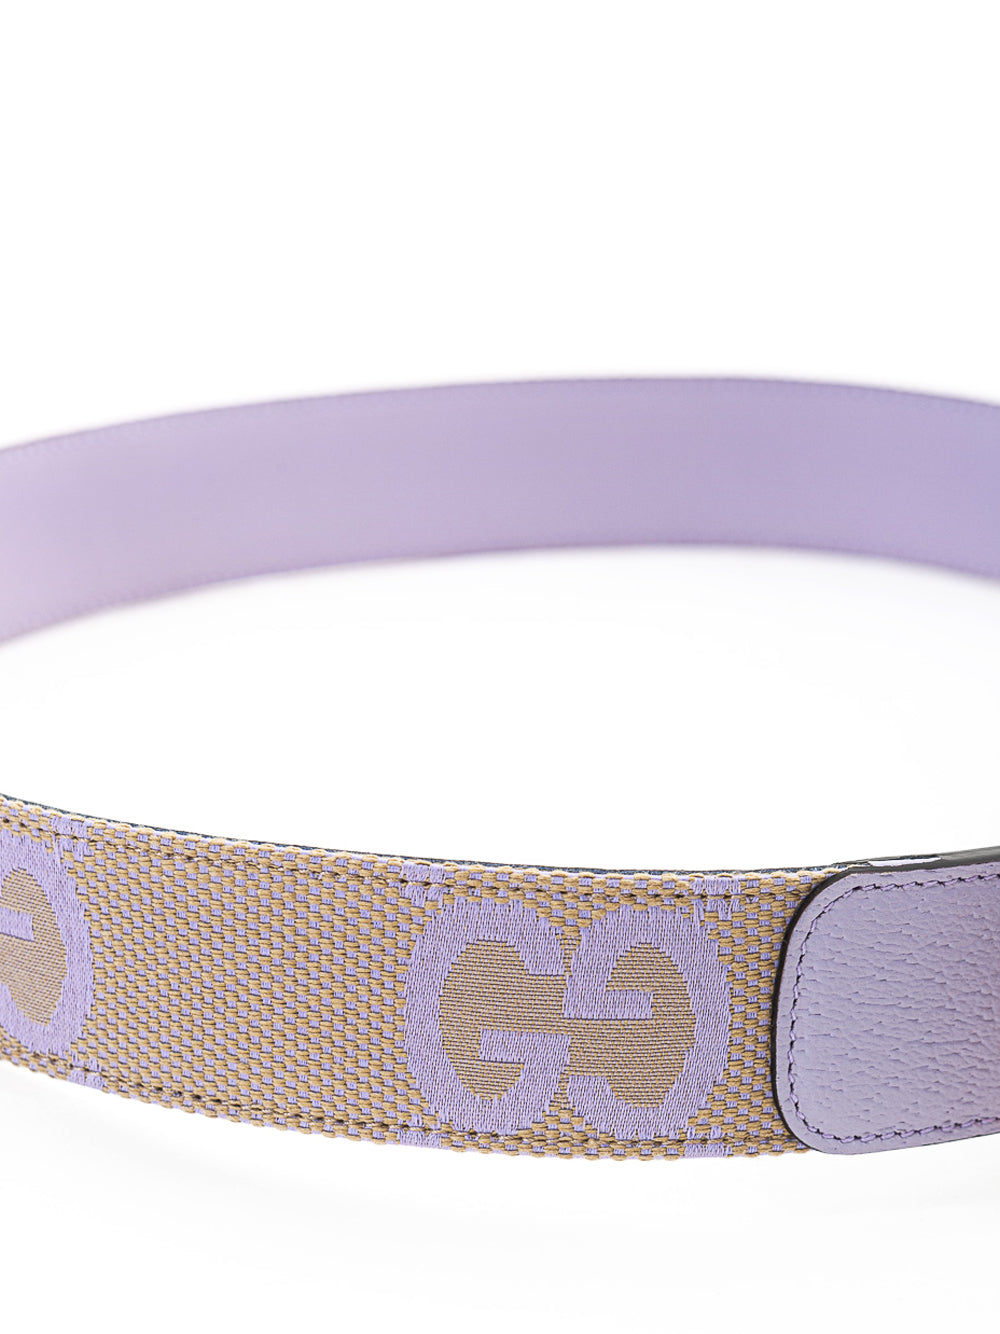 Cintura Beige Lilla con Logo Monogramma GG Gucci